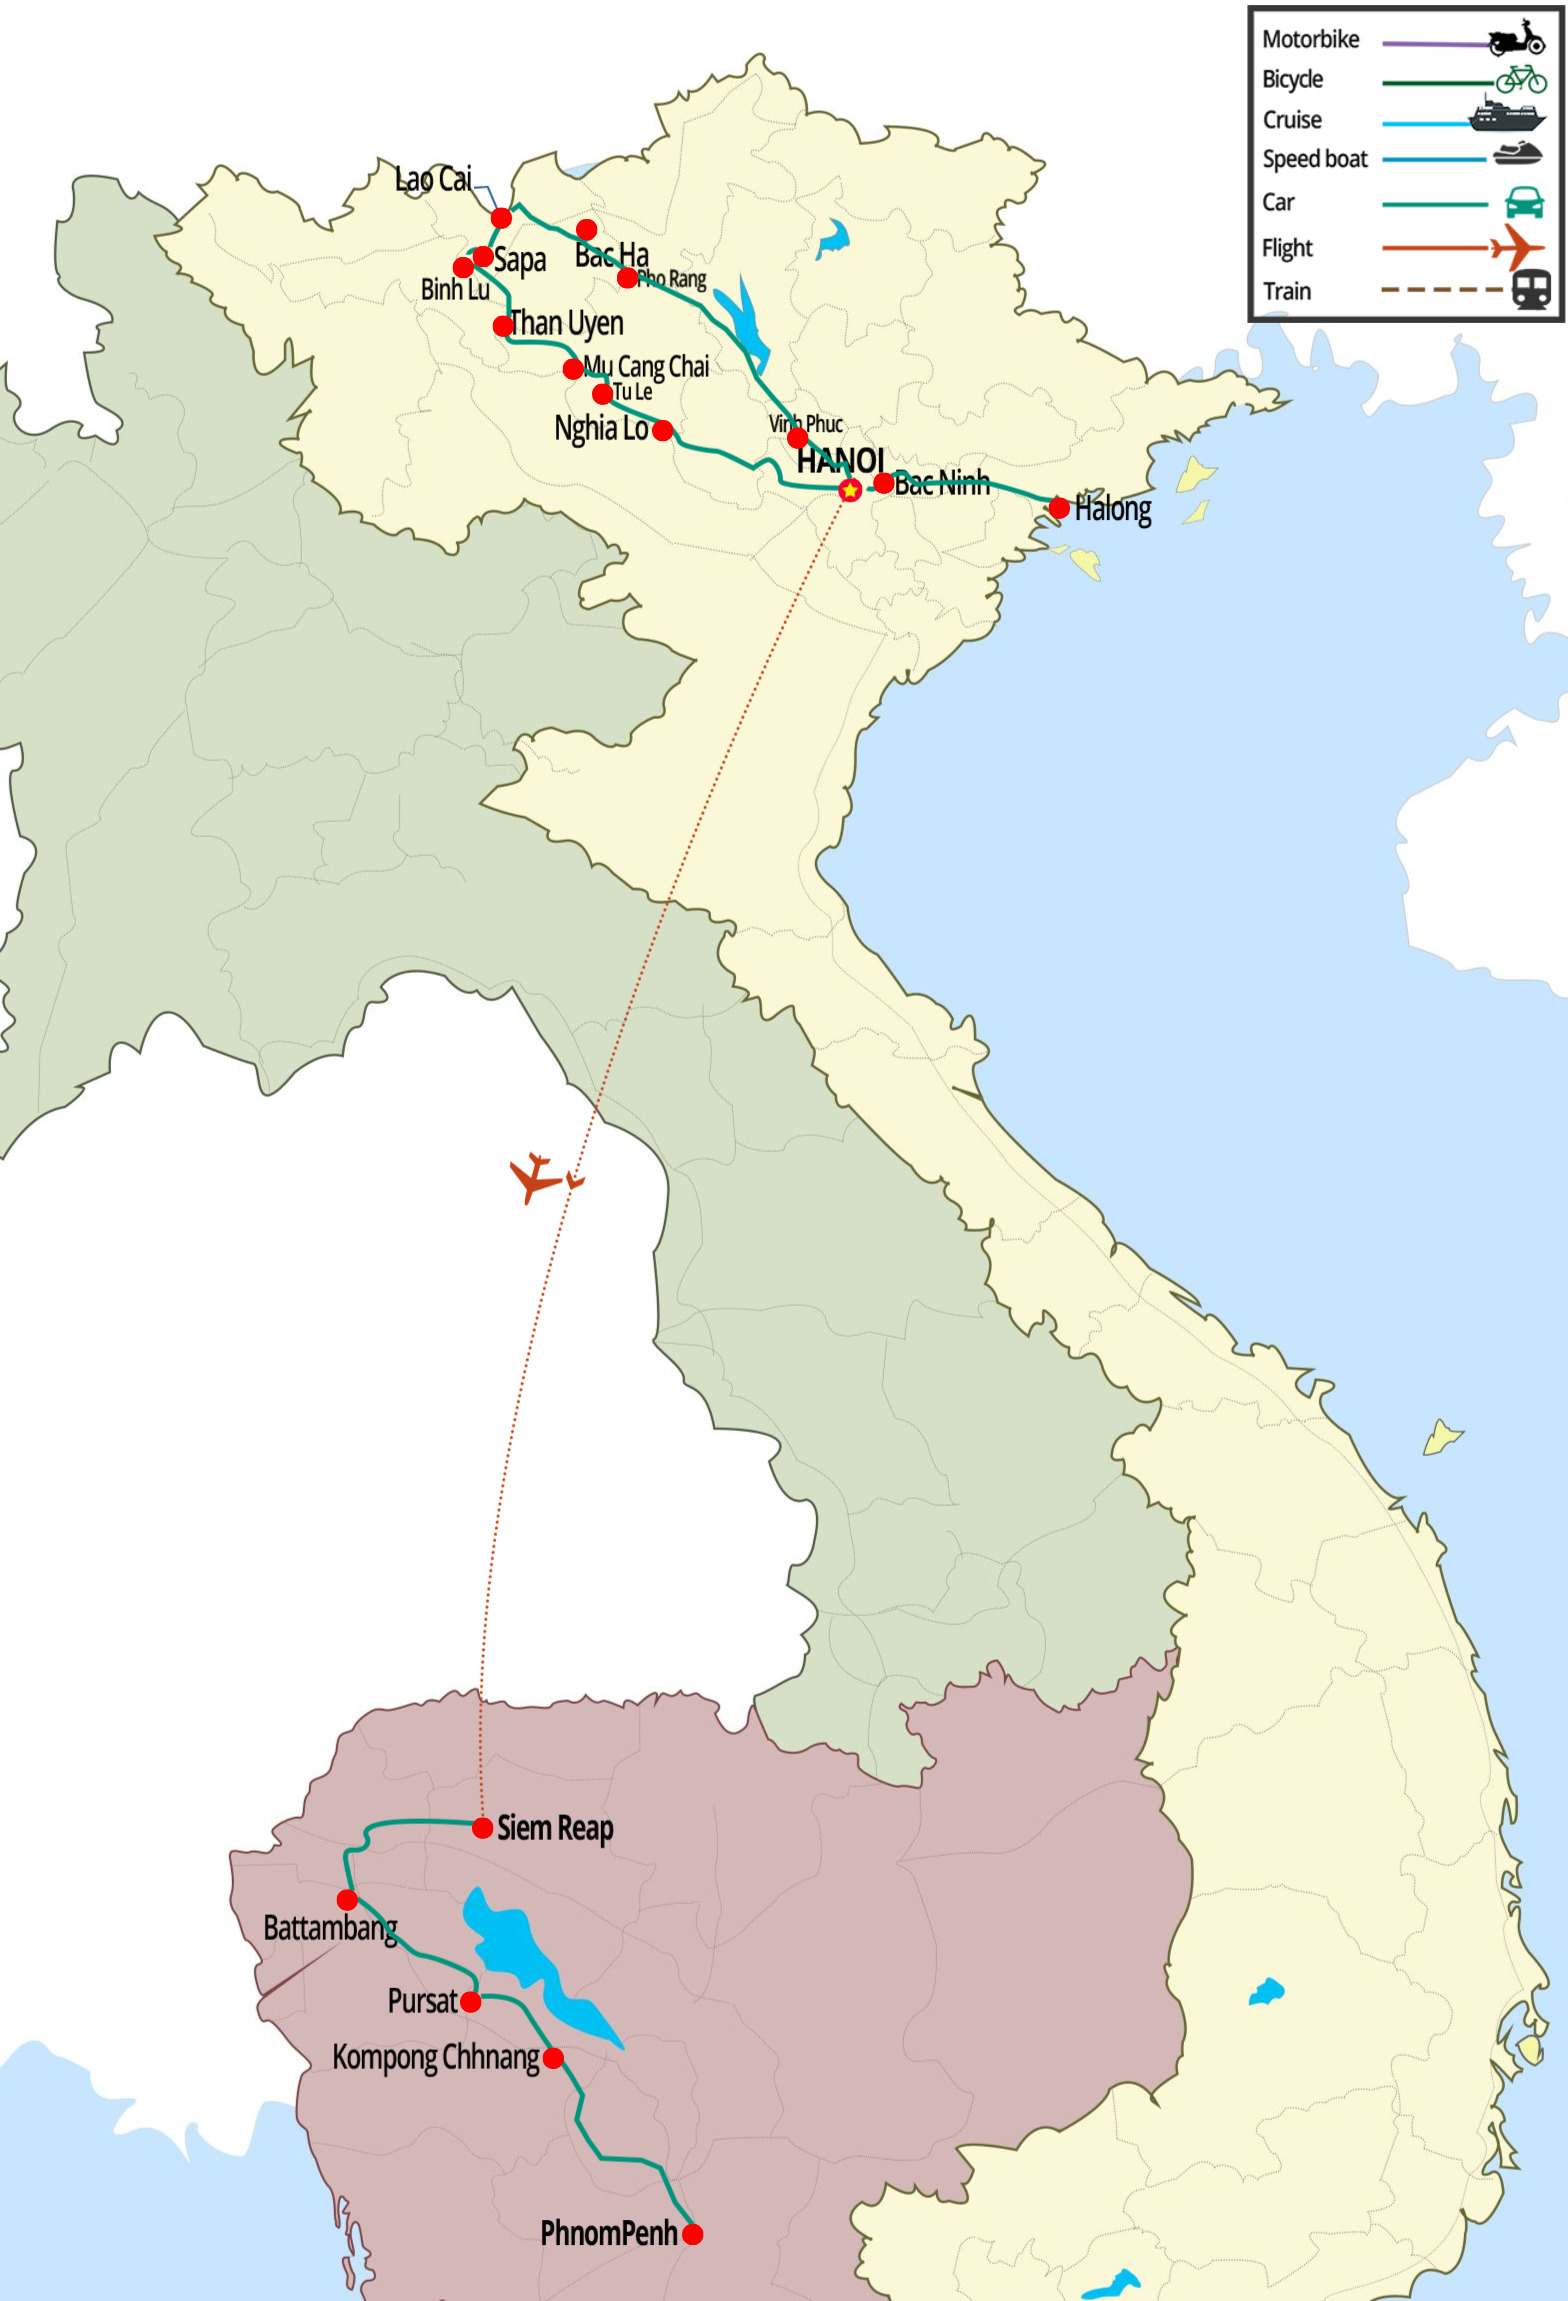 Vietnam Cambodia tour, Hanoi, Ho Chi Minh – city, Halong Bay, Hoi An, Hue, My Son sanctuary, Phong Nha Khe Bang, Angkor temples, Battambang, Kampong Cham, Tonlé Sap